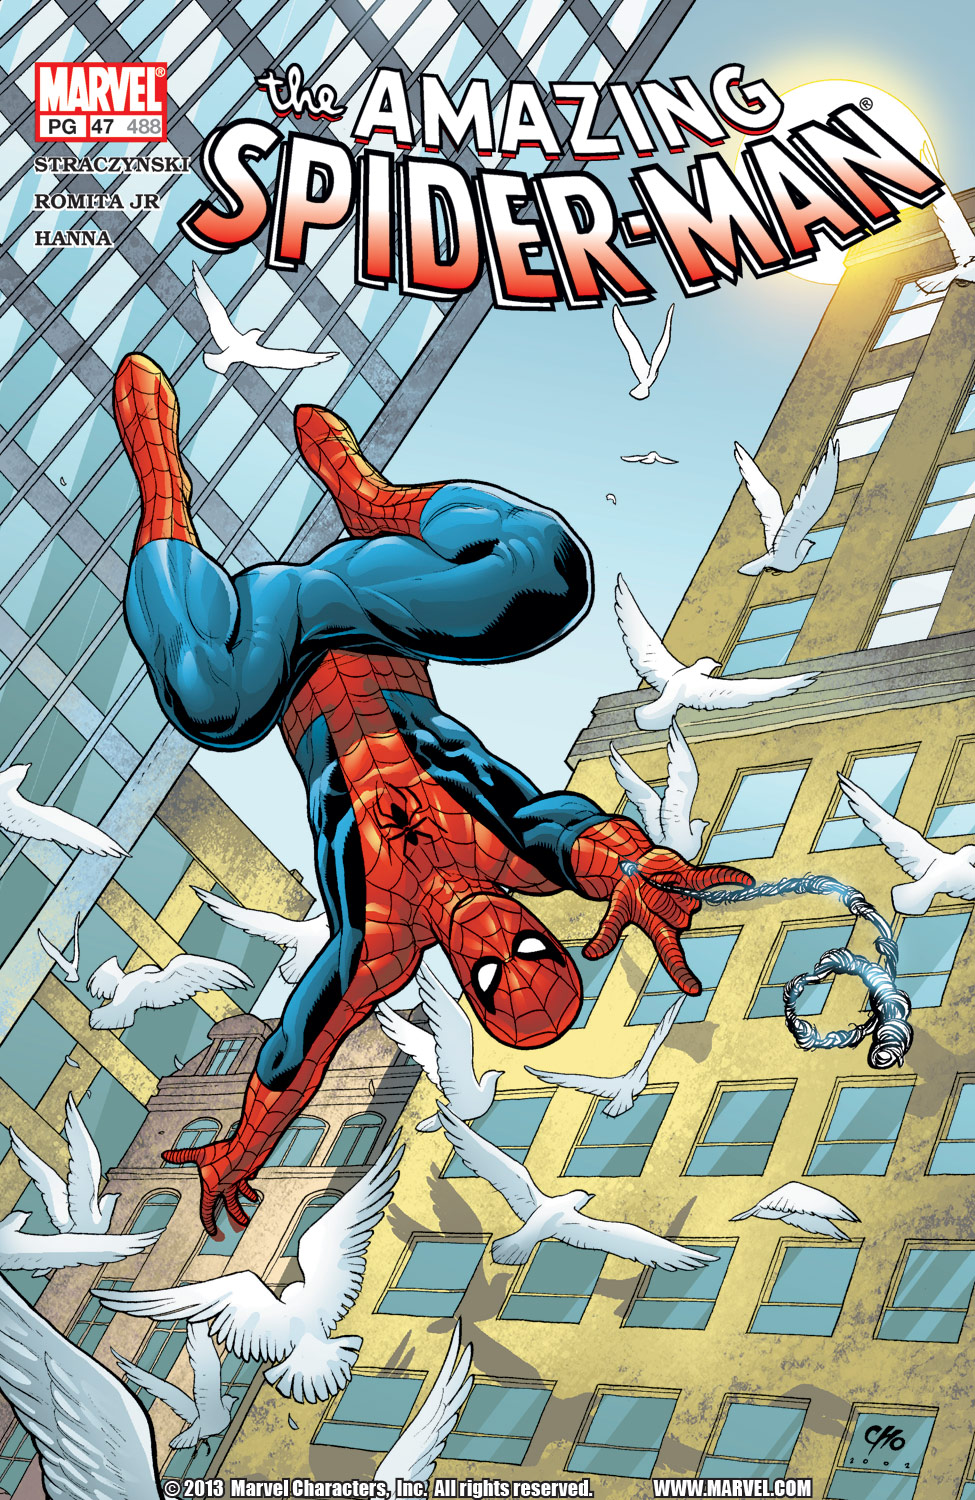 Amazing Spider-Man #47 (488) (1998)